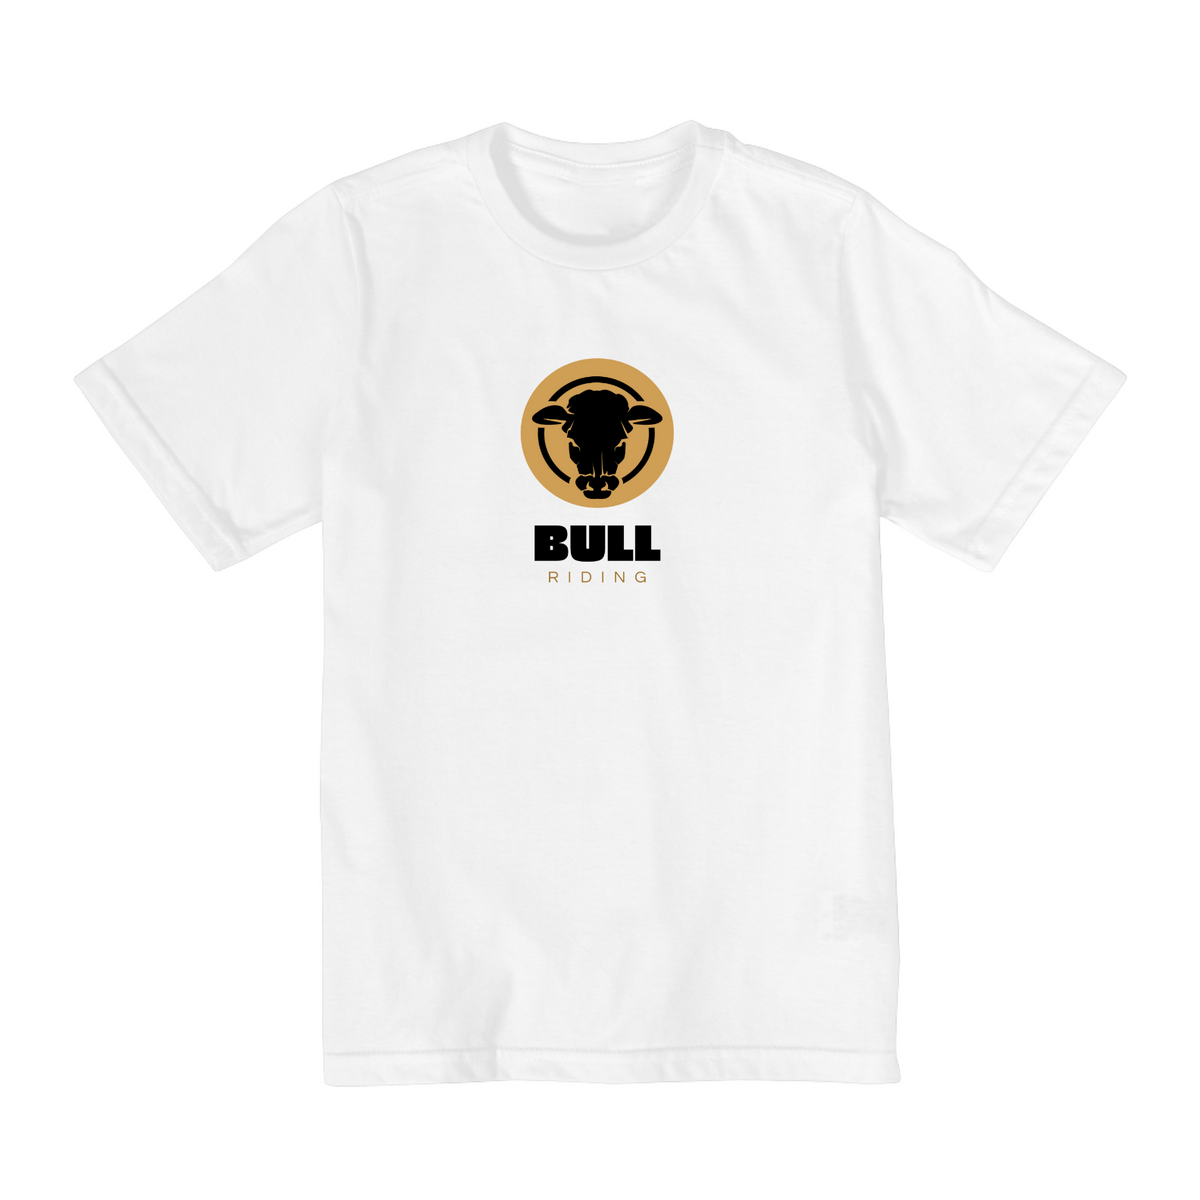 Nome do produto: Quality Infantil / Bull Riding